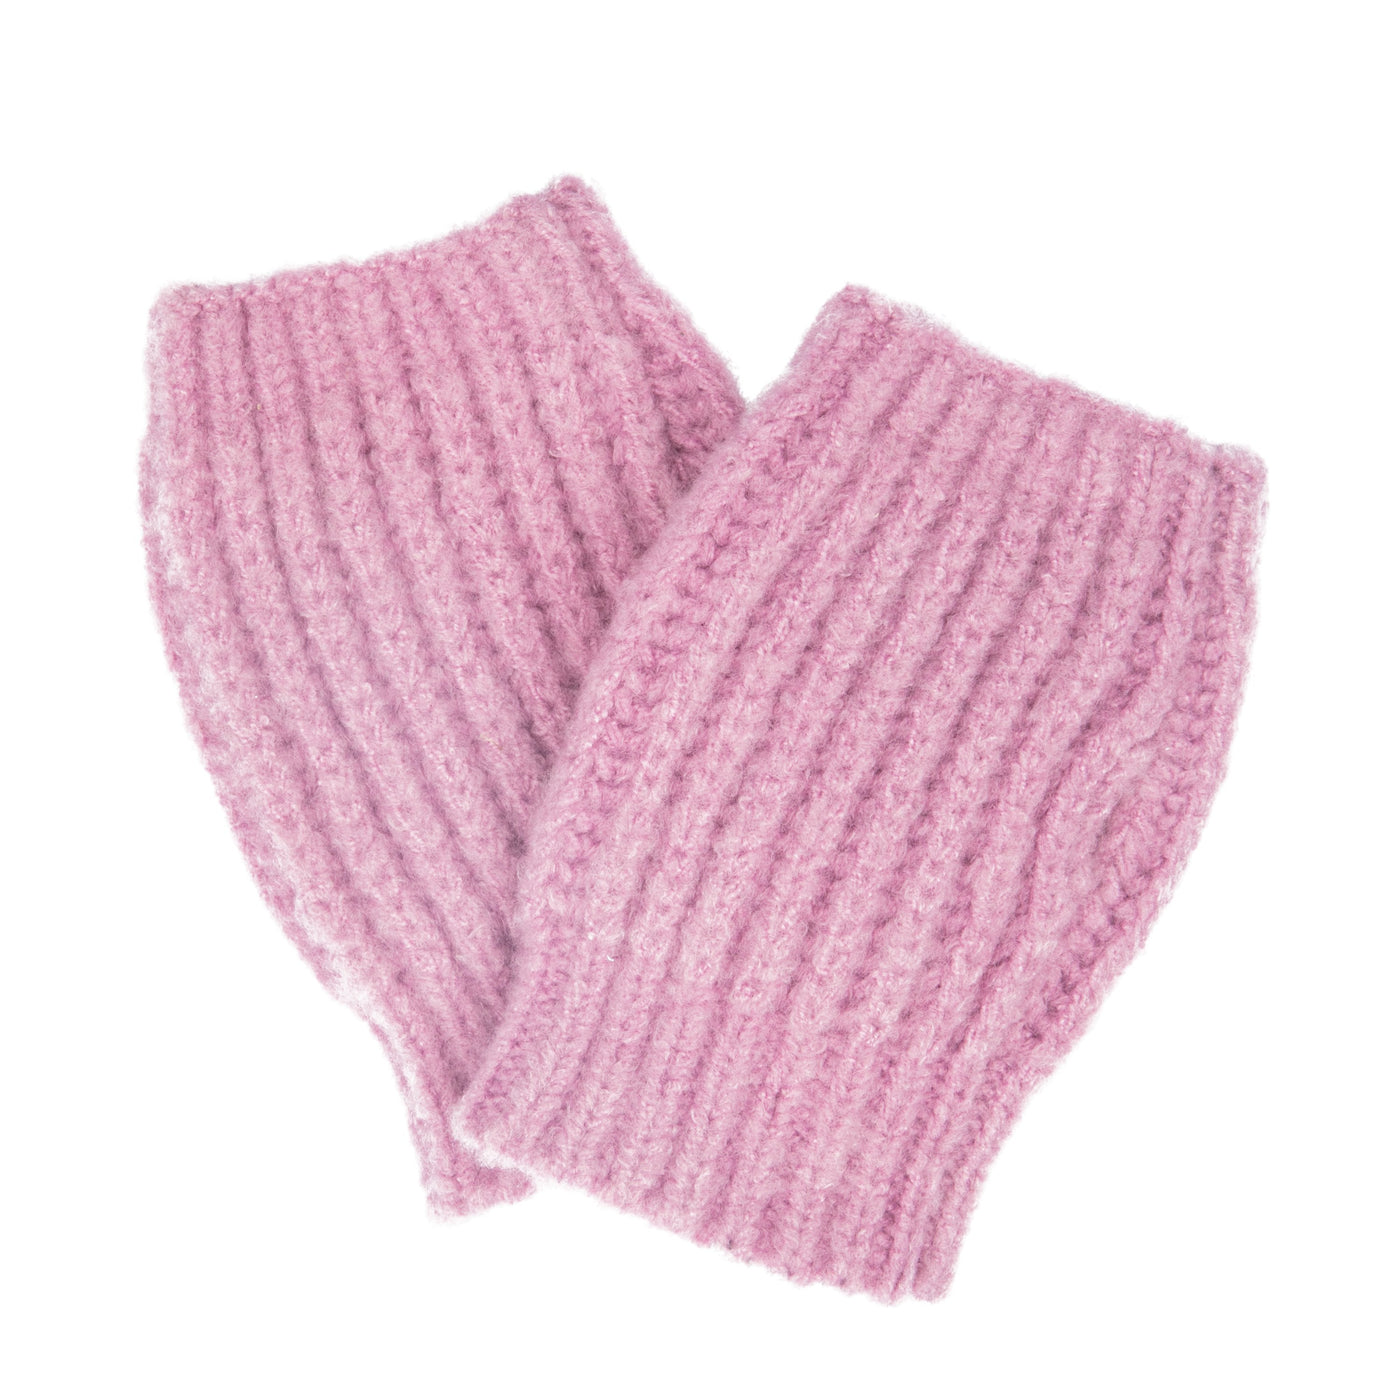 GLOVES - Women's Brushed Knit Fingerless Glove